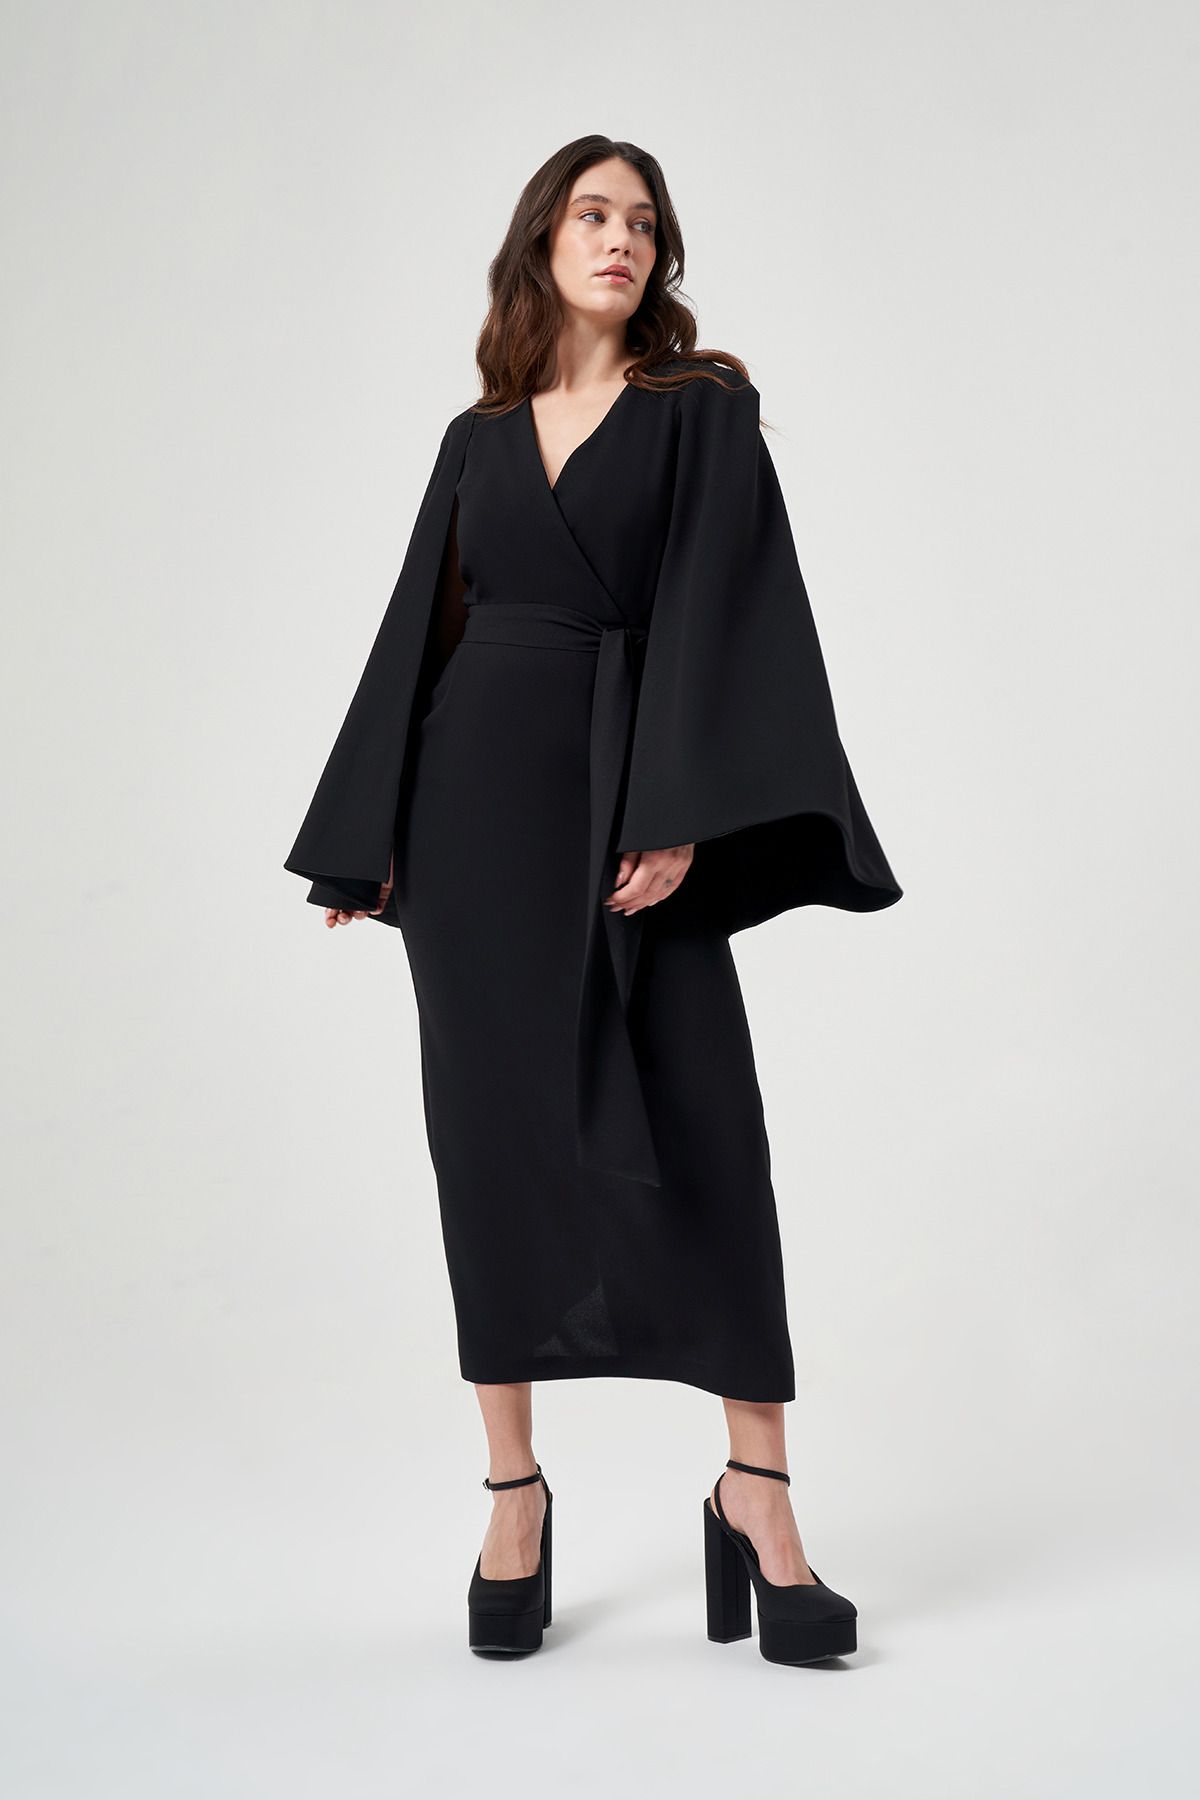 Mimya Siyah Pelerinli Krep Elbise 2758